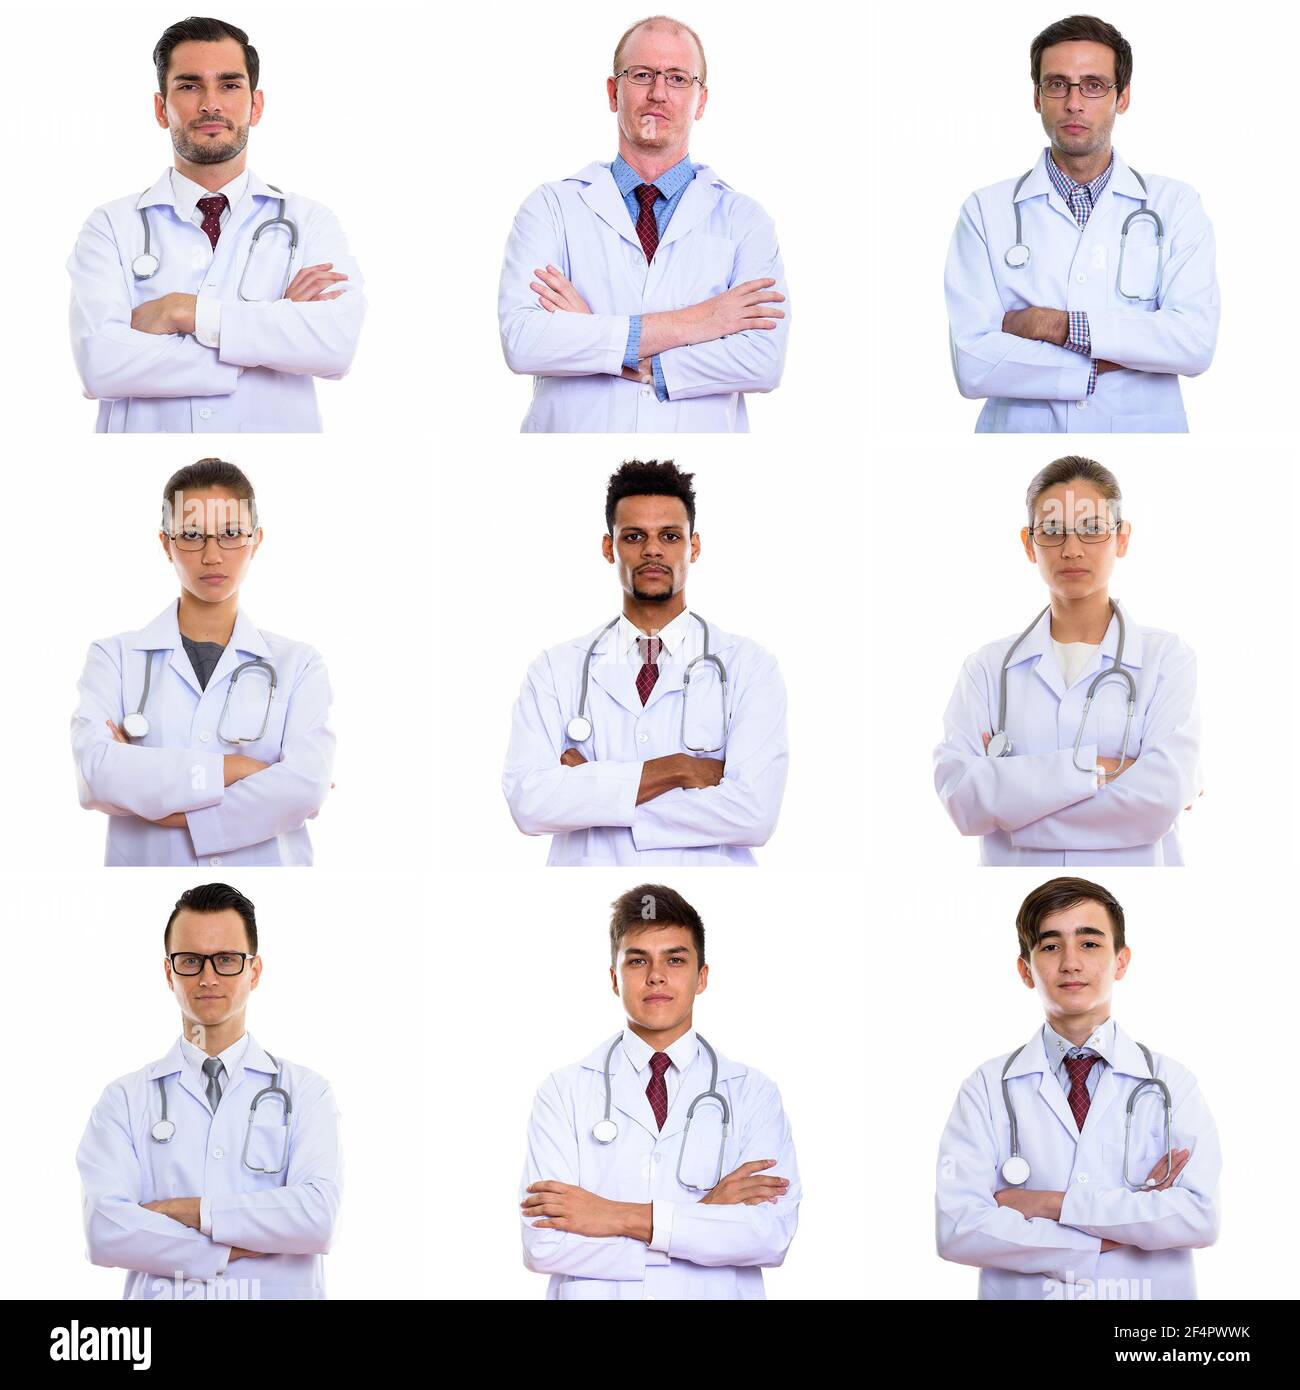 Porträts von Ärzten und medizinischen Fachkräften, die die Kamera betrachten Im Studio Stockfoto